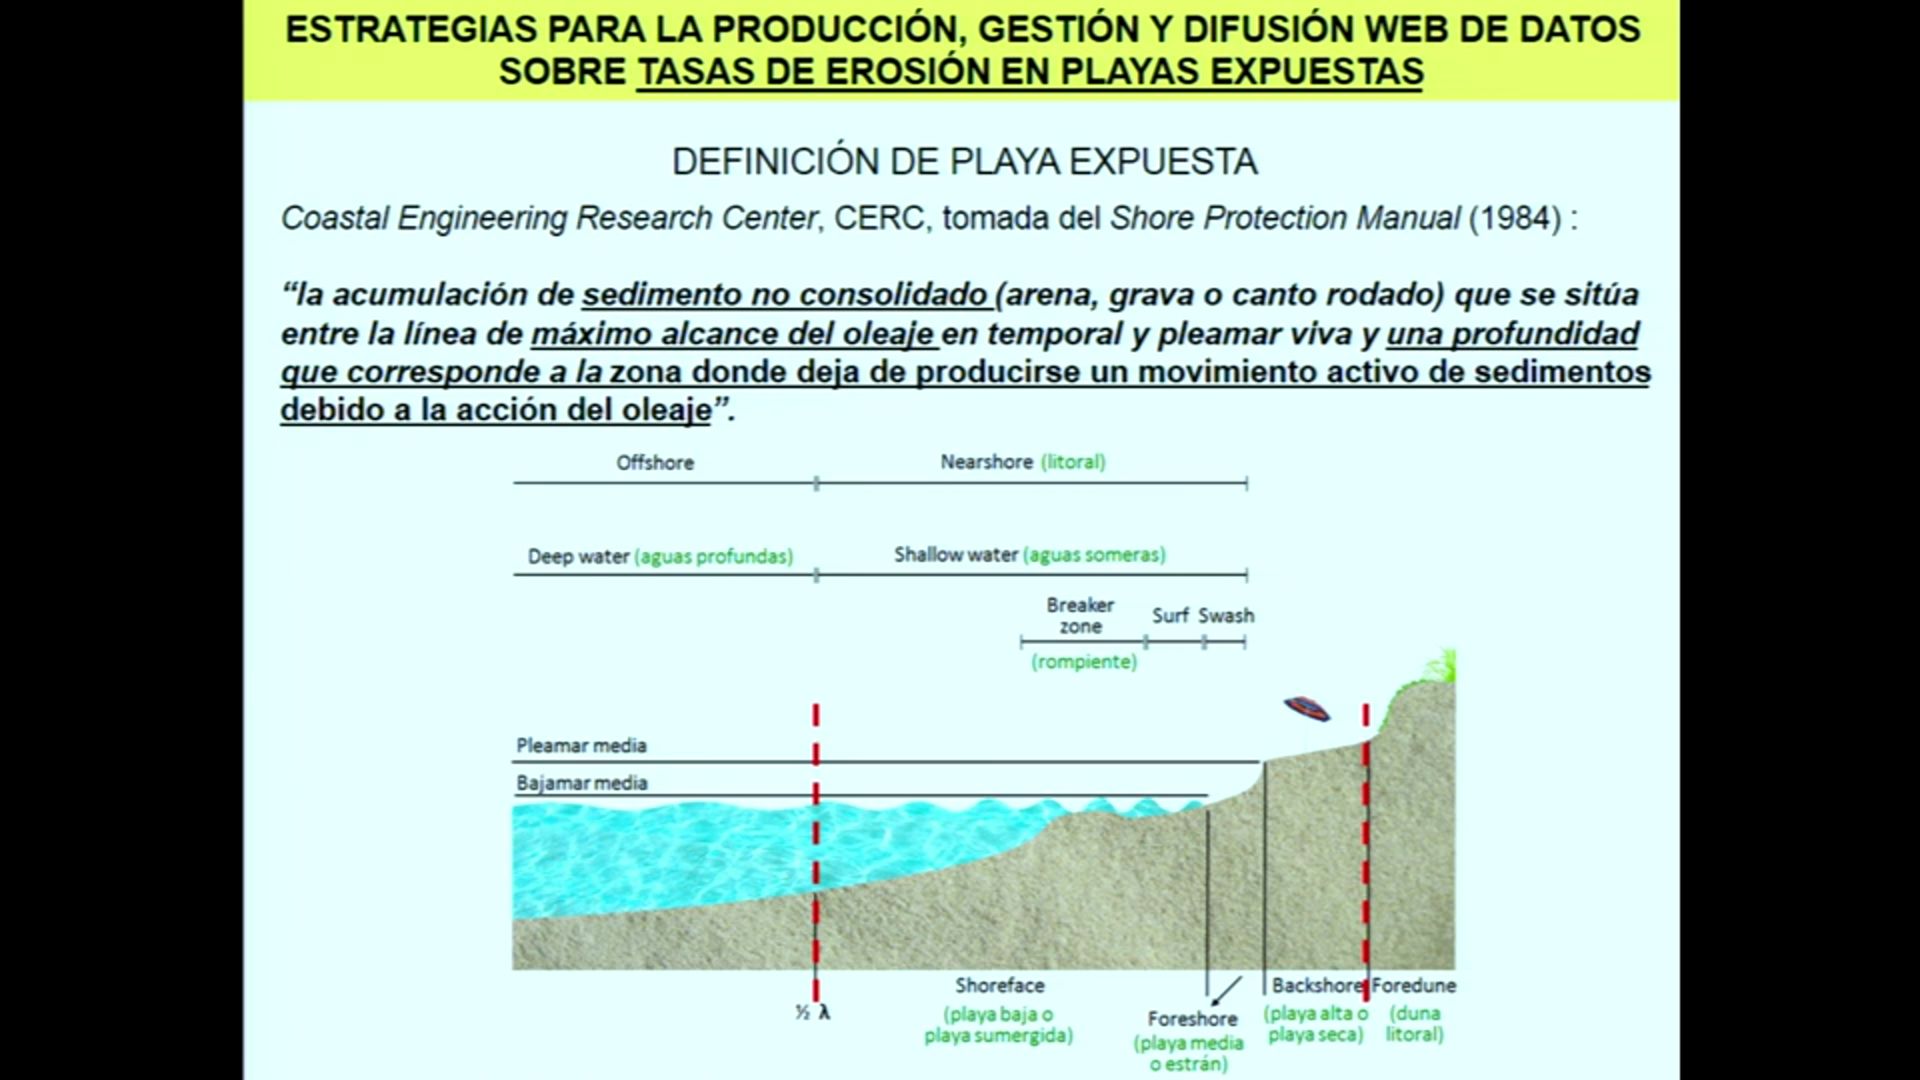 El litoral de Andalucía: estrategias para la producción, gestión y difusión web de líneas de costa y ...<br/>tasas de erosión a medio-largo plazo para las playas de la costa andaluza. José Ojeda Zújar